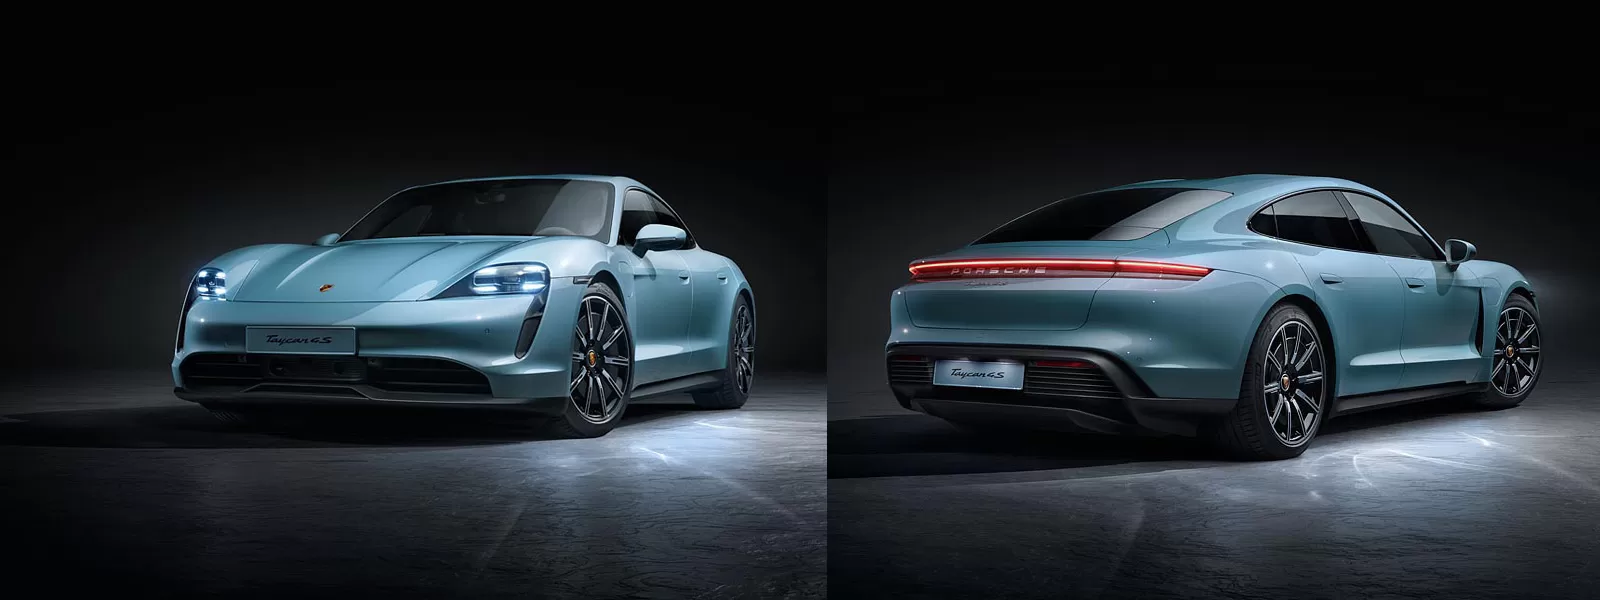 Porsche расширяет модельный ряд электрических спорткаров с Taycan 4S